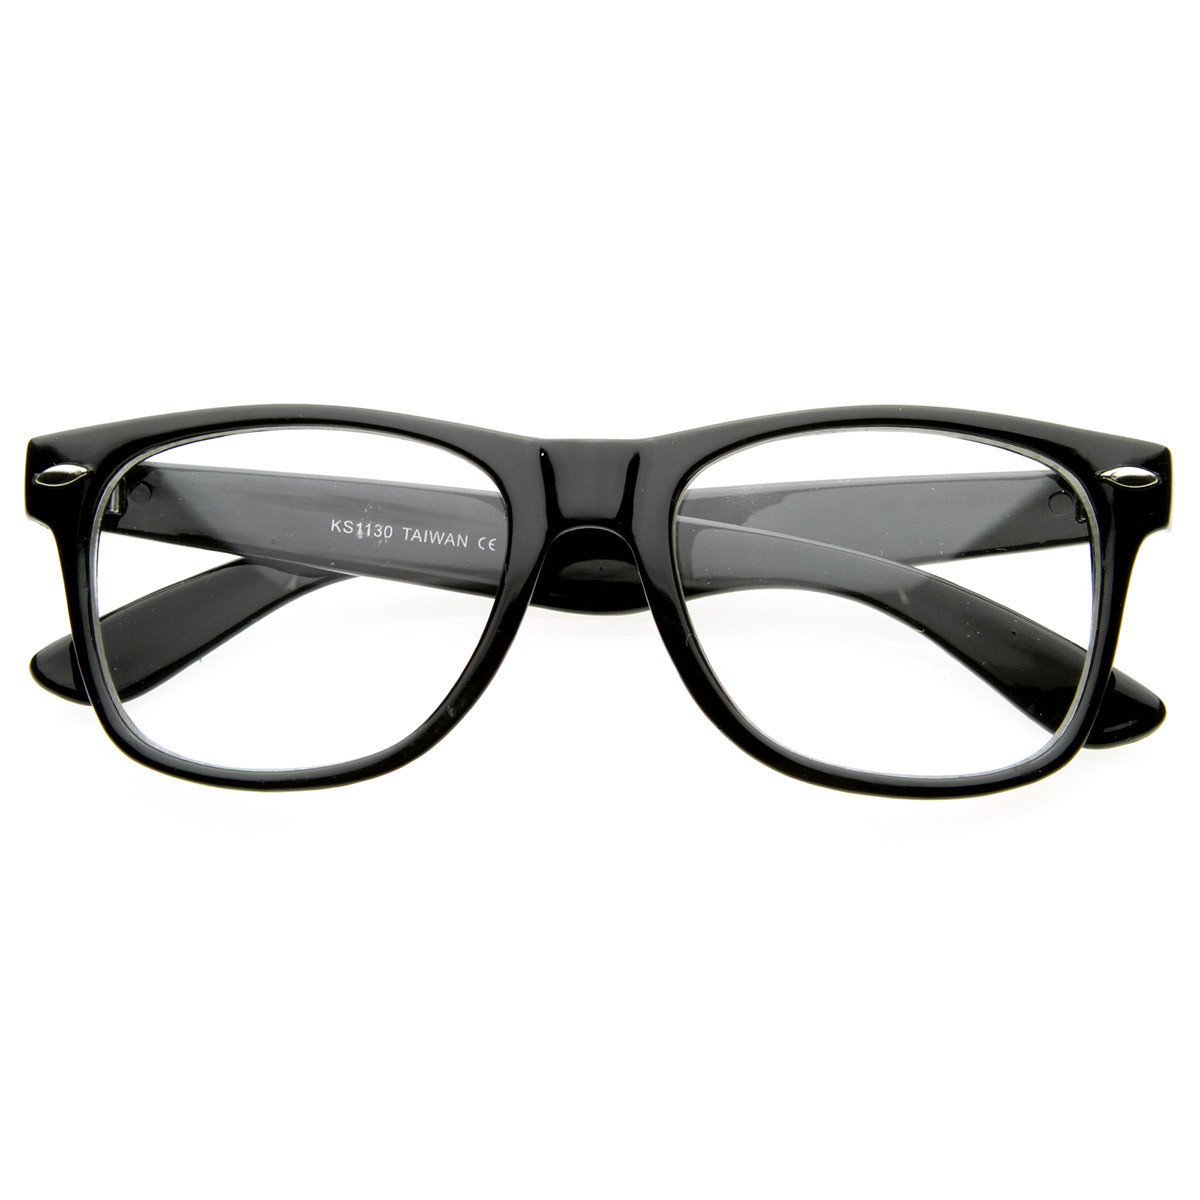 Vintage Inspired Eyewear Original Geek Nerd Clear Lens Horned Rim Glasses - 2874 - Tortoise